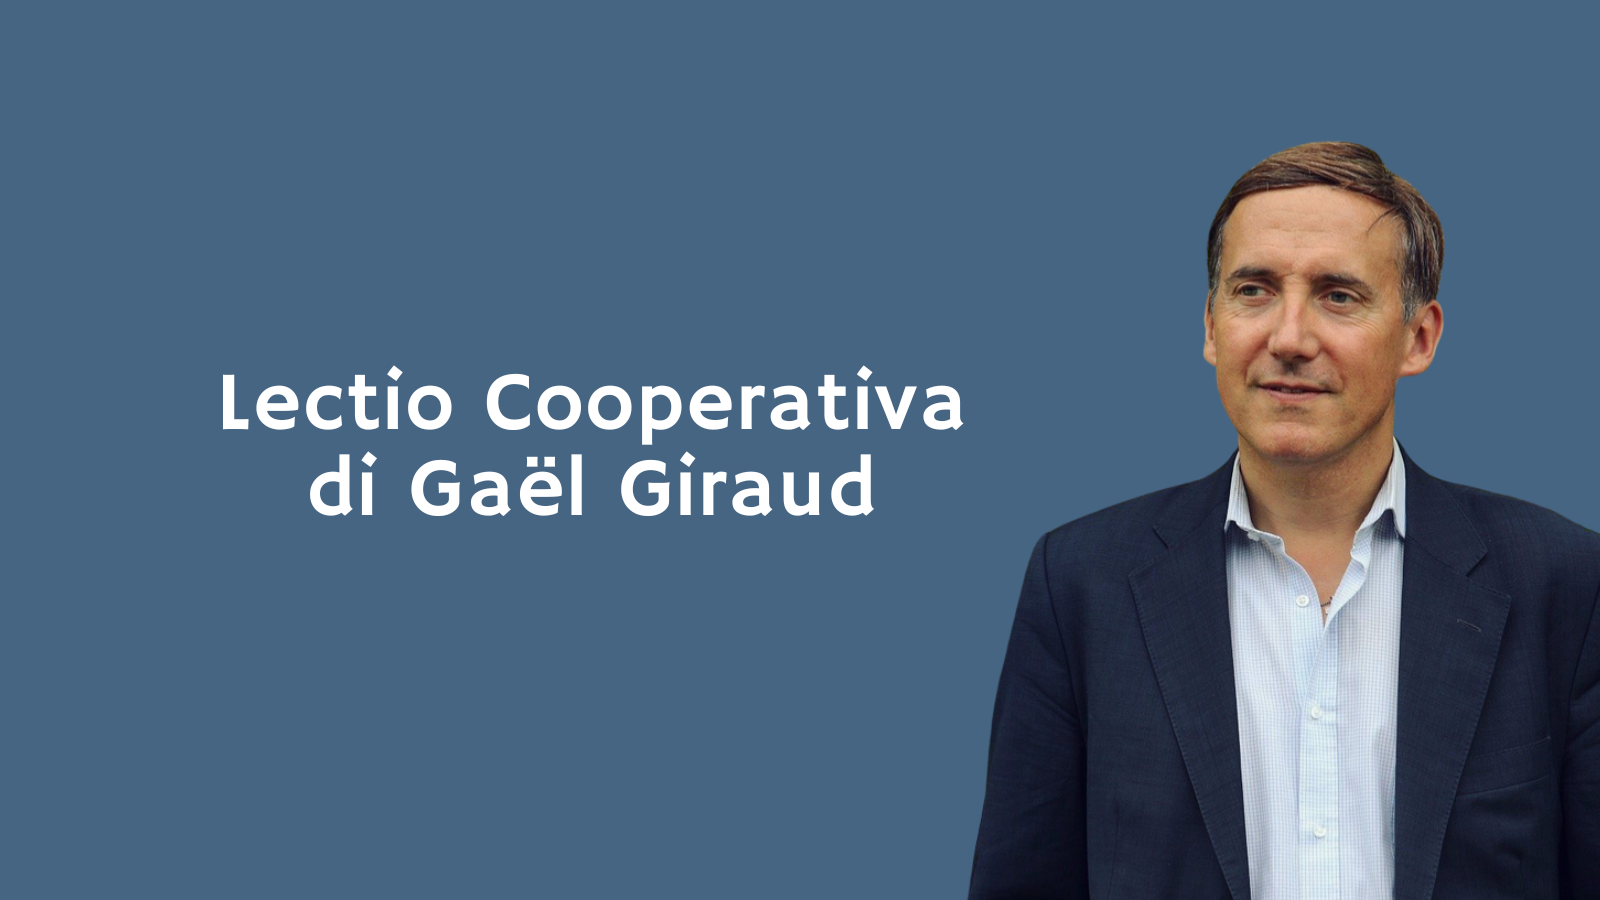 Lectio Cooperativa di Gaël Giraud: il 30 maggio a Roma